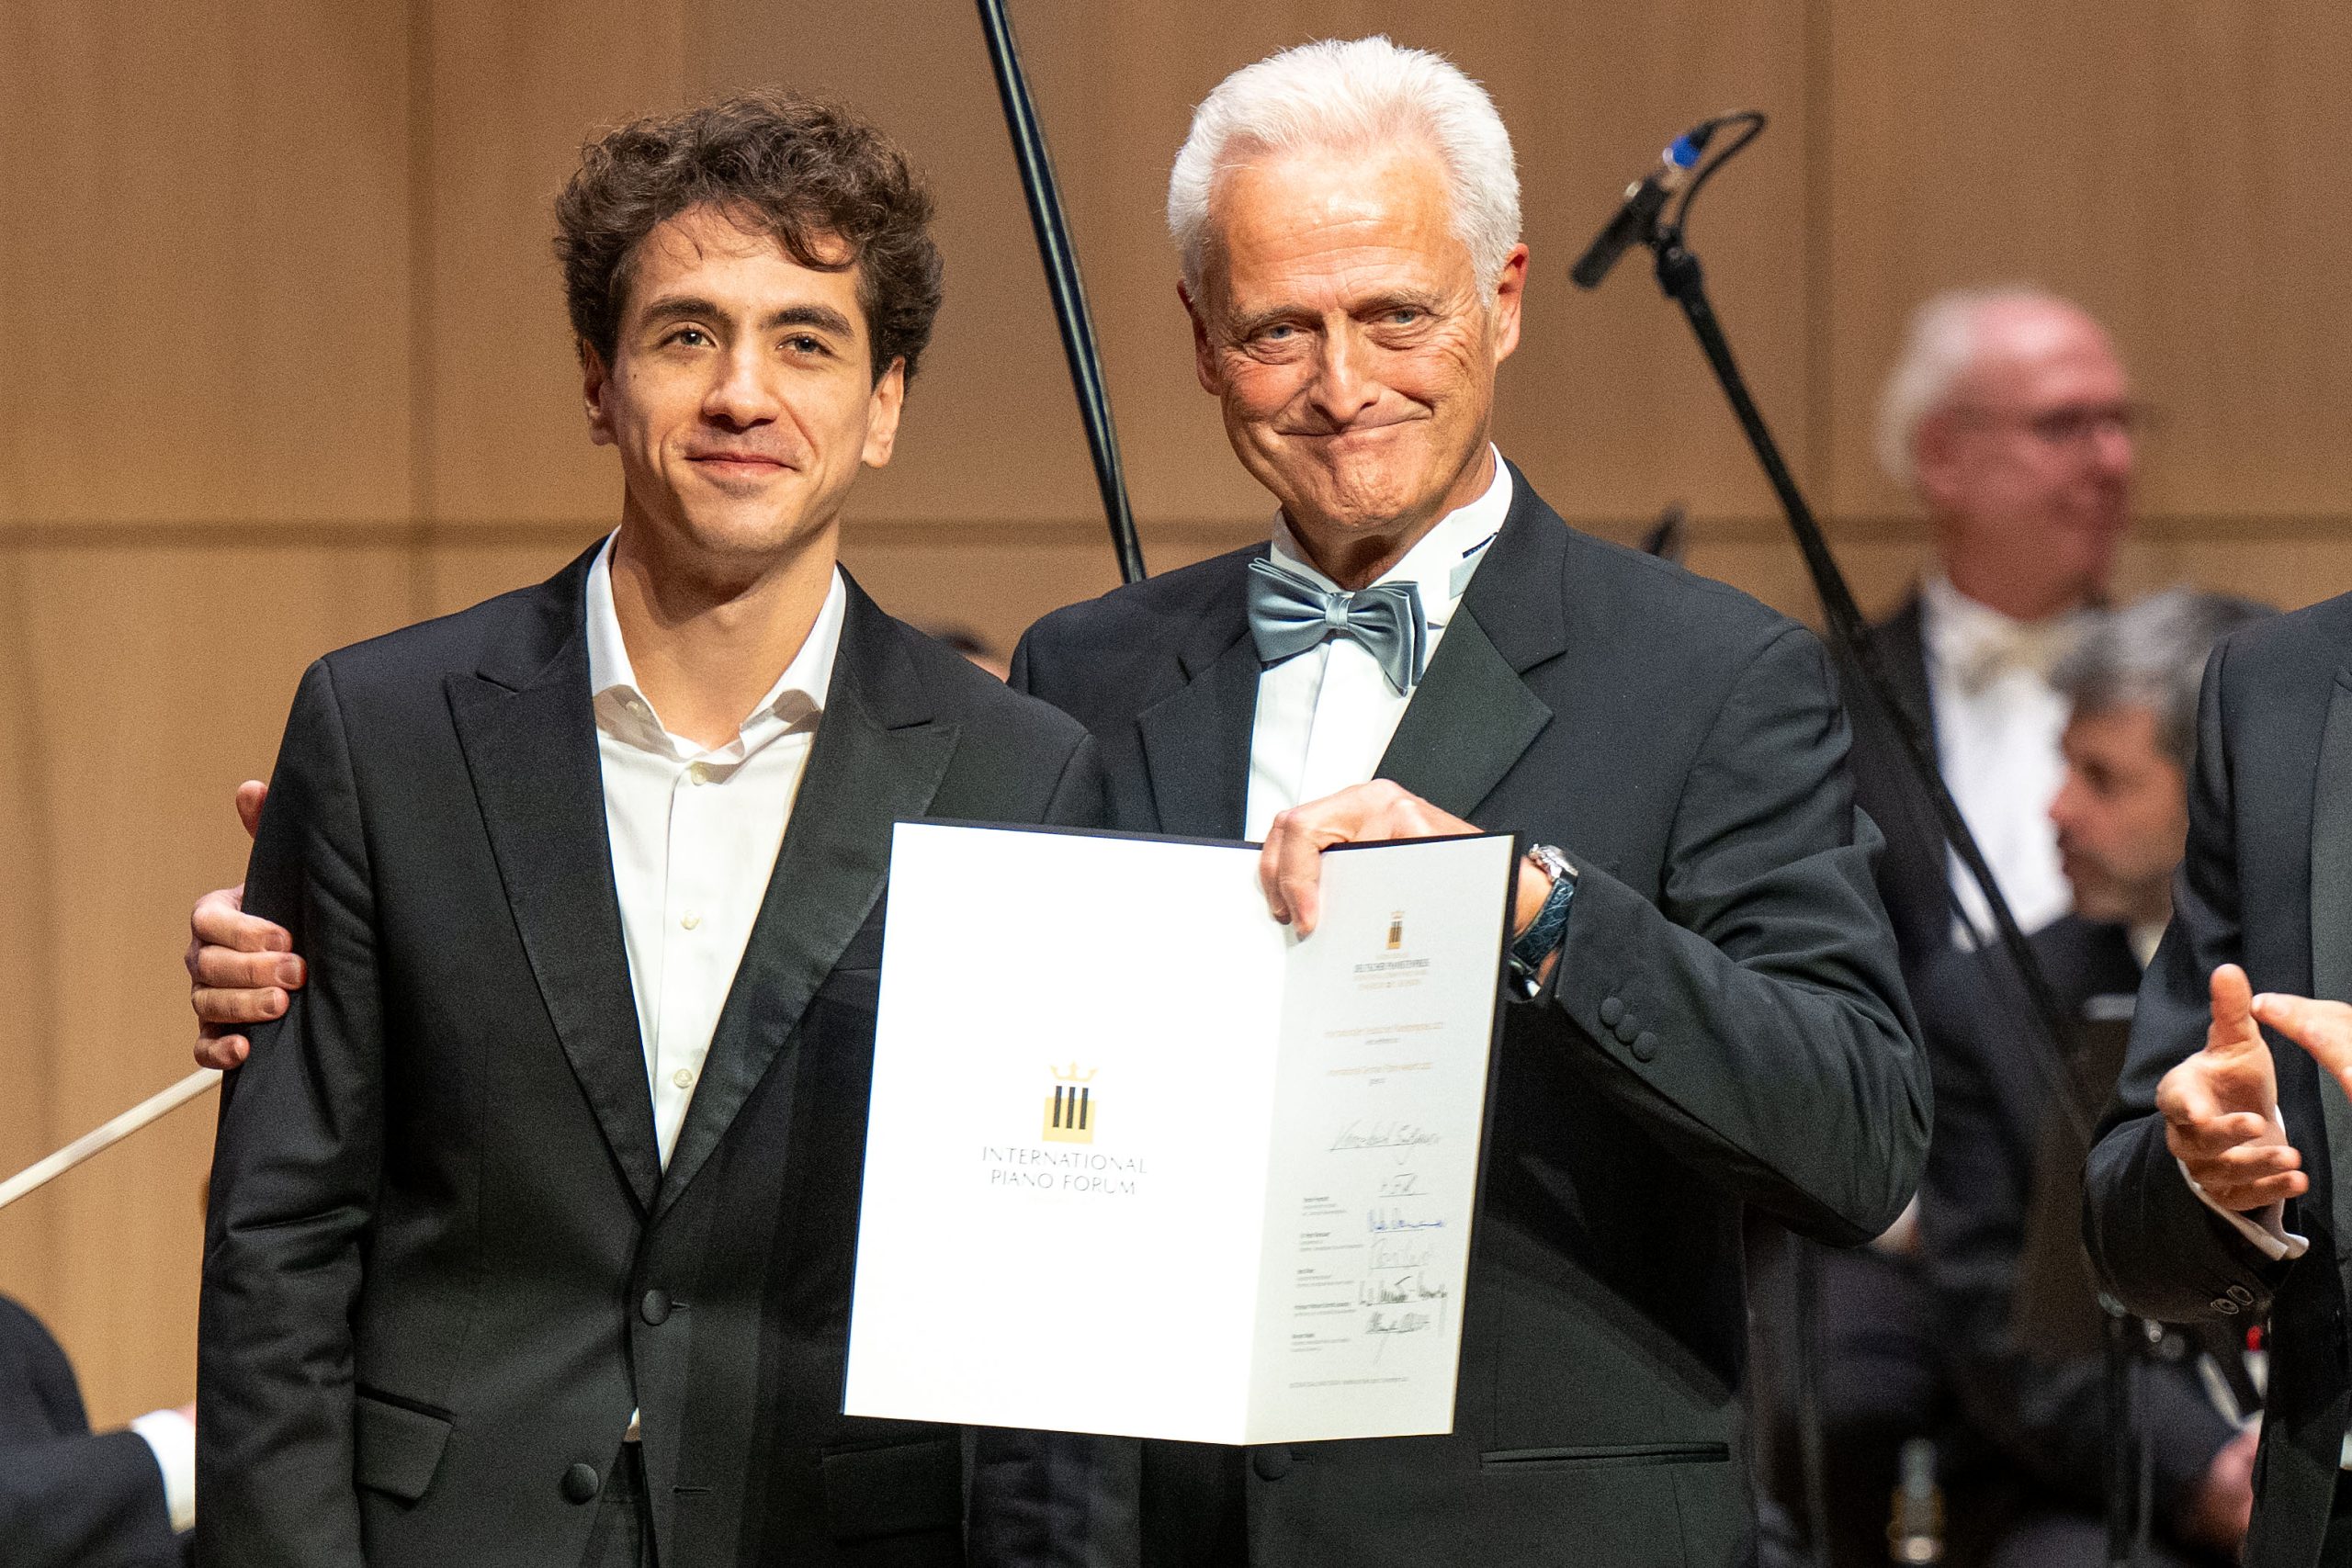 Grand Prix Finanlkonzert des 11. Internationalen Deutschen Pianistenpreis des Internationalen Pianisten Forums im Casals Forum Kronberg/ Taunus